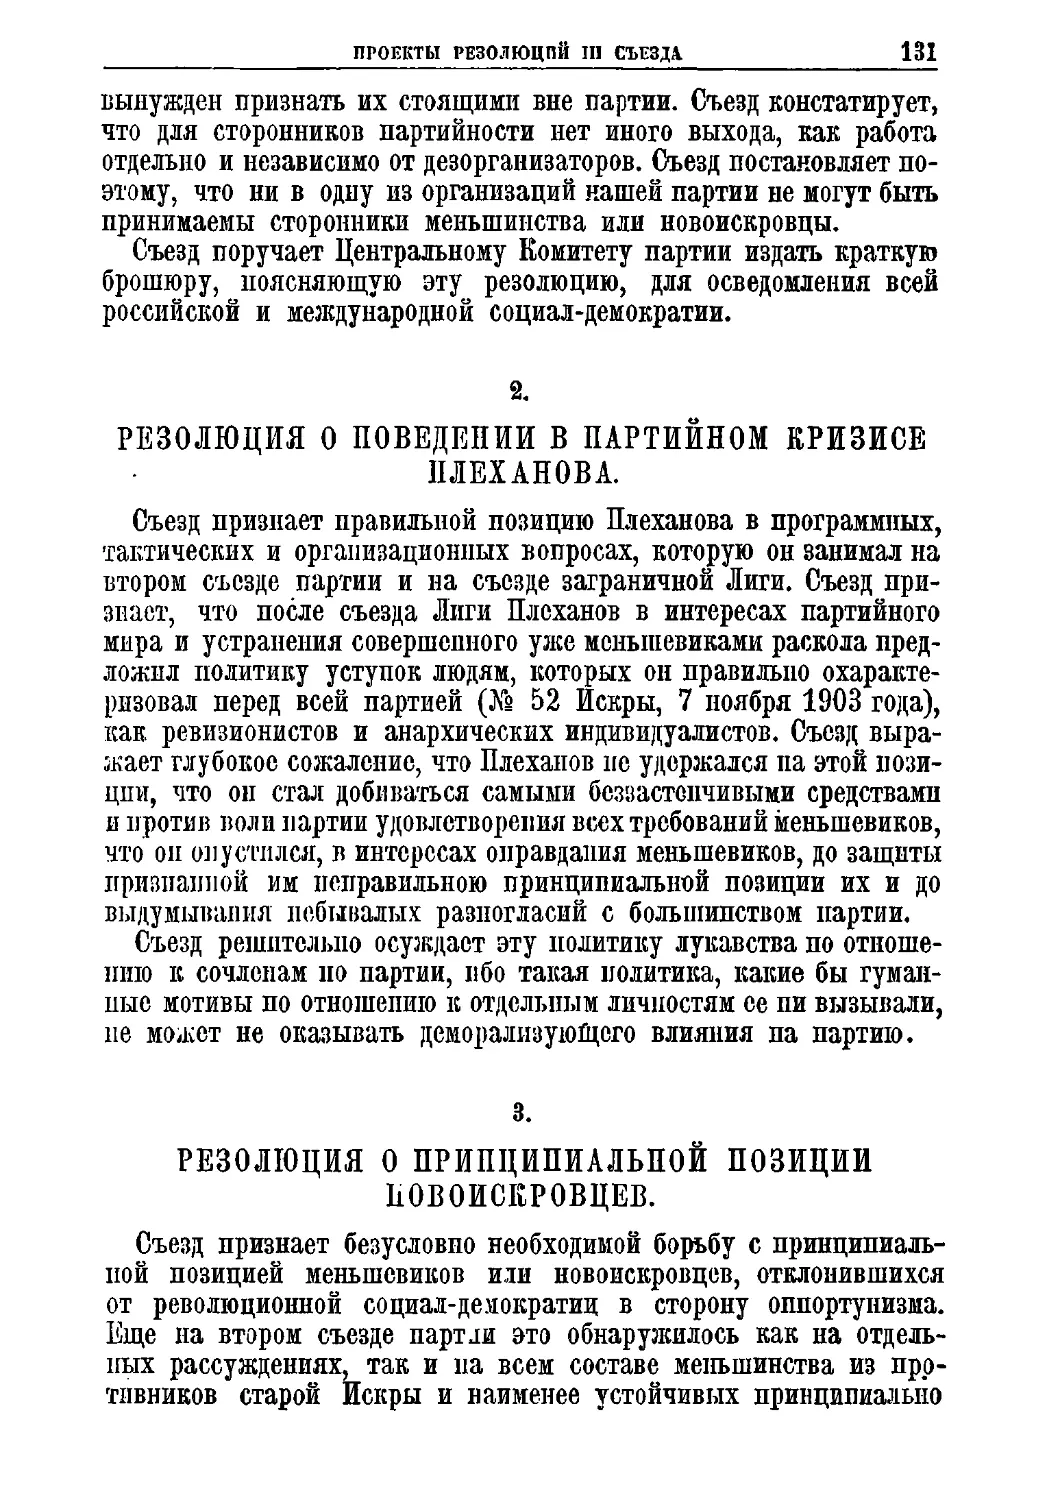 2. Резолюция о поведении в партийном кризисе Плеханова
3. Резолюция о принципиальной позиции новоискровцев